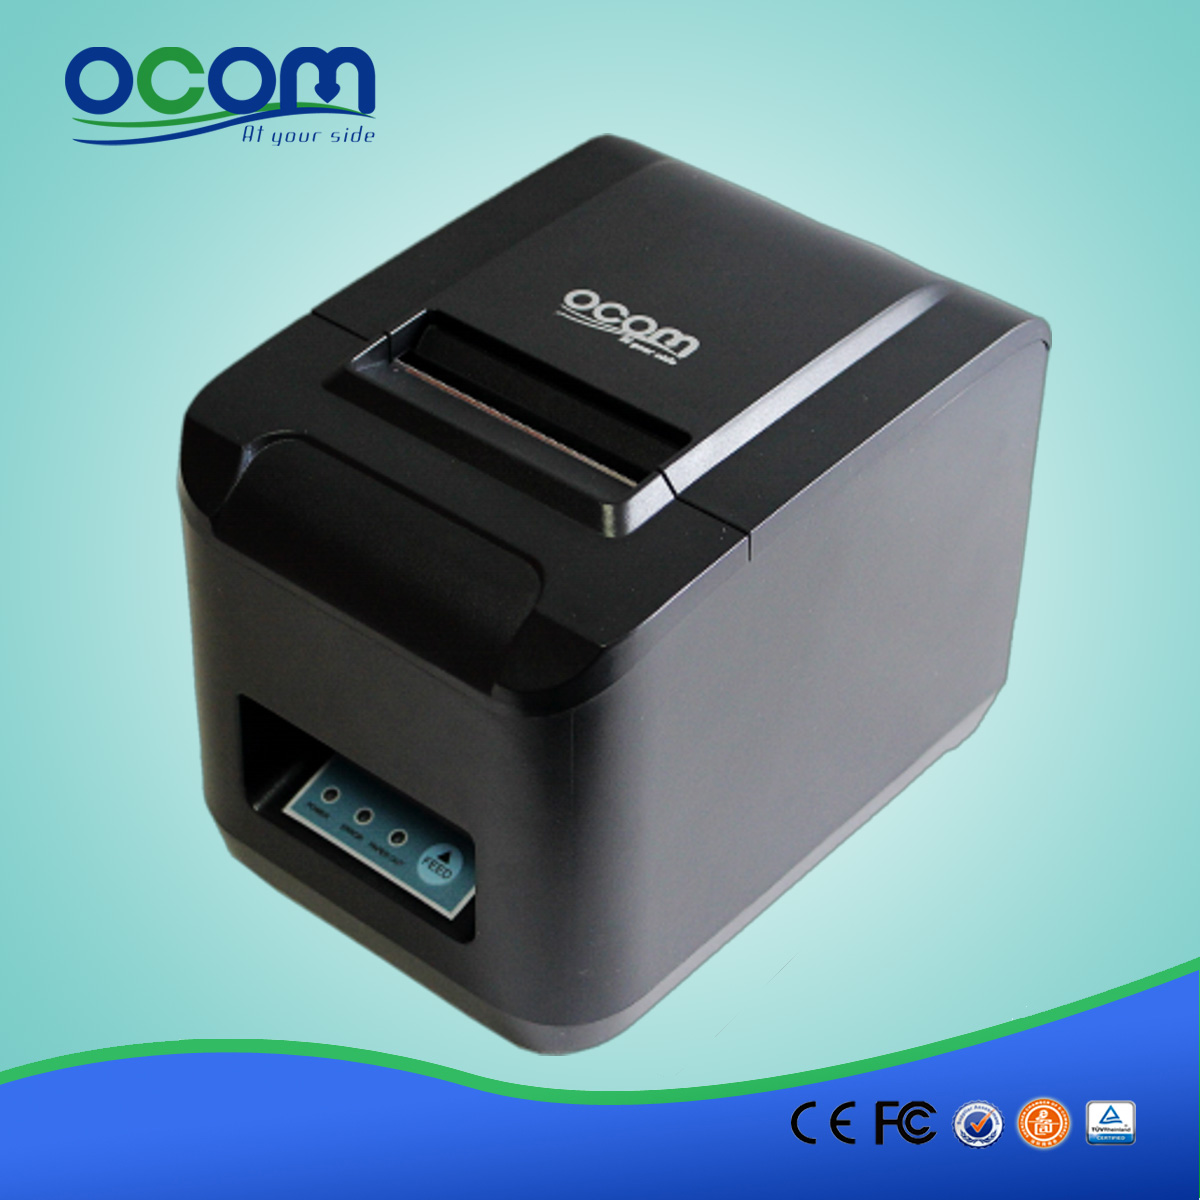 高品质80毫米POS收据打印机OCPP-808-URL